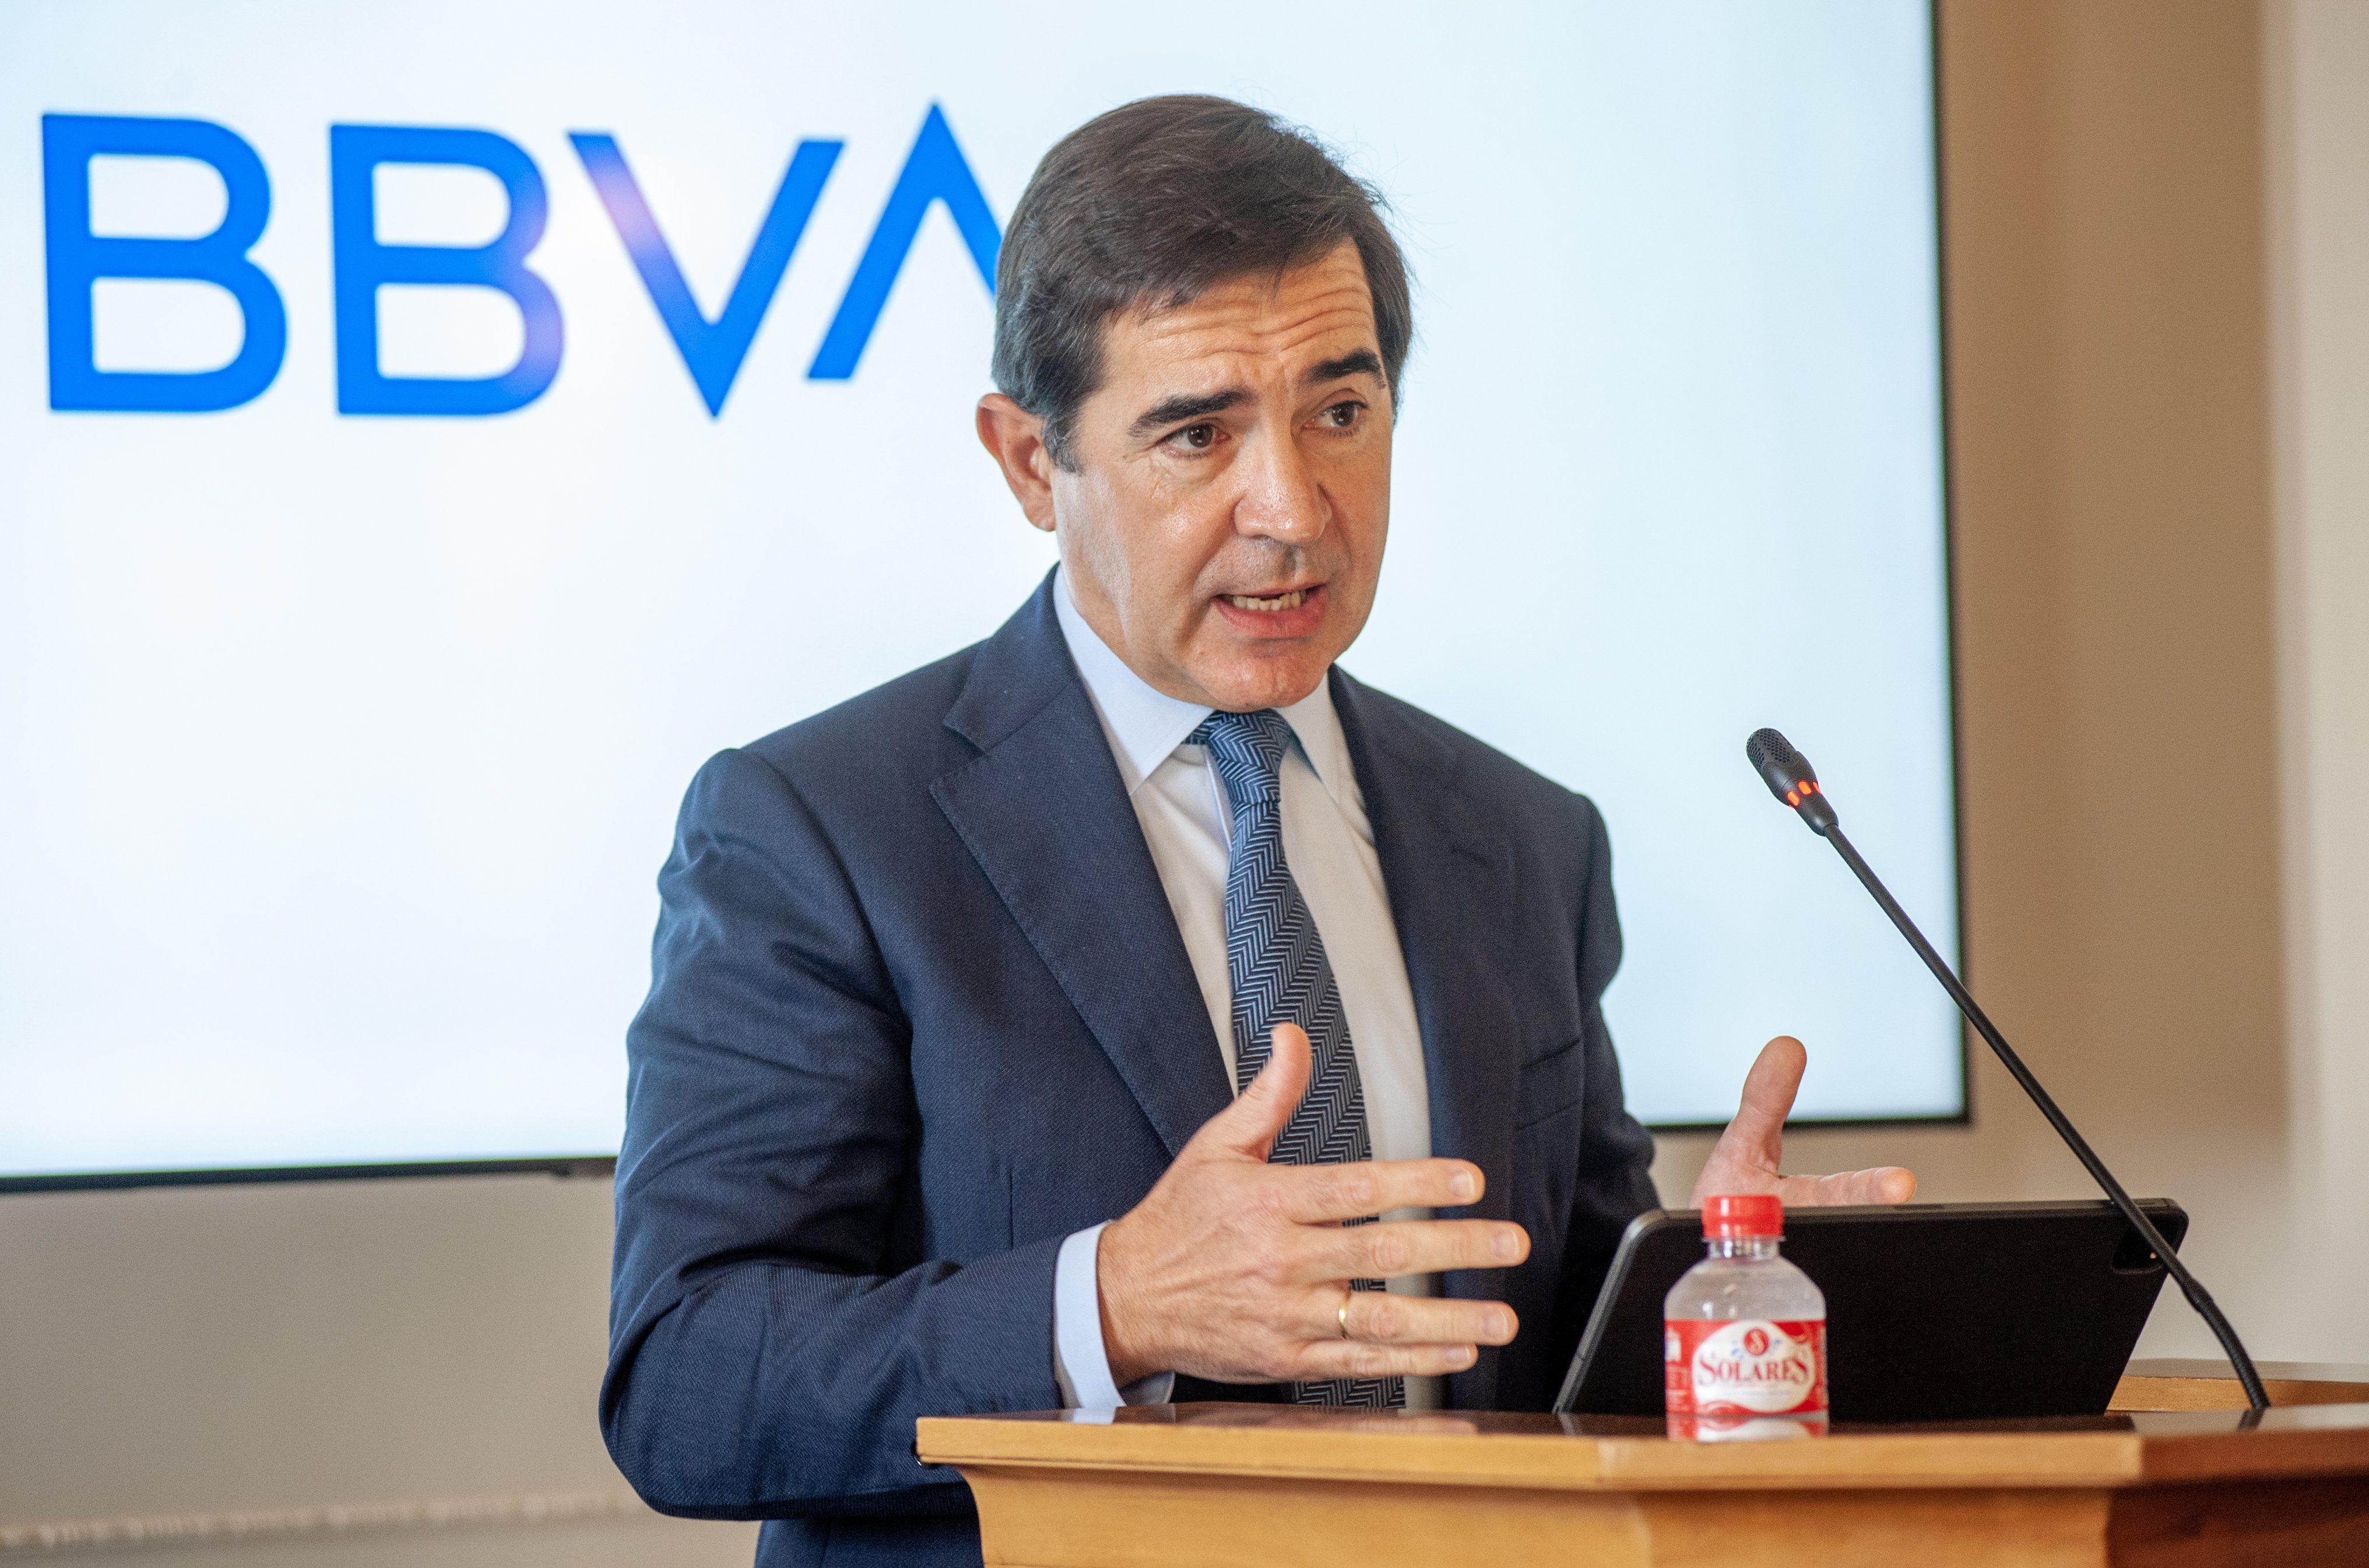 El presidente de BBVA, Carlos Torres